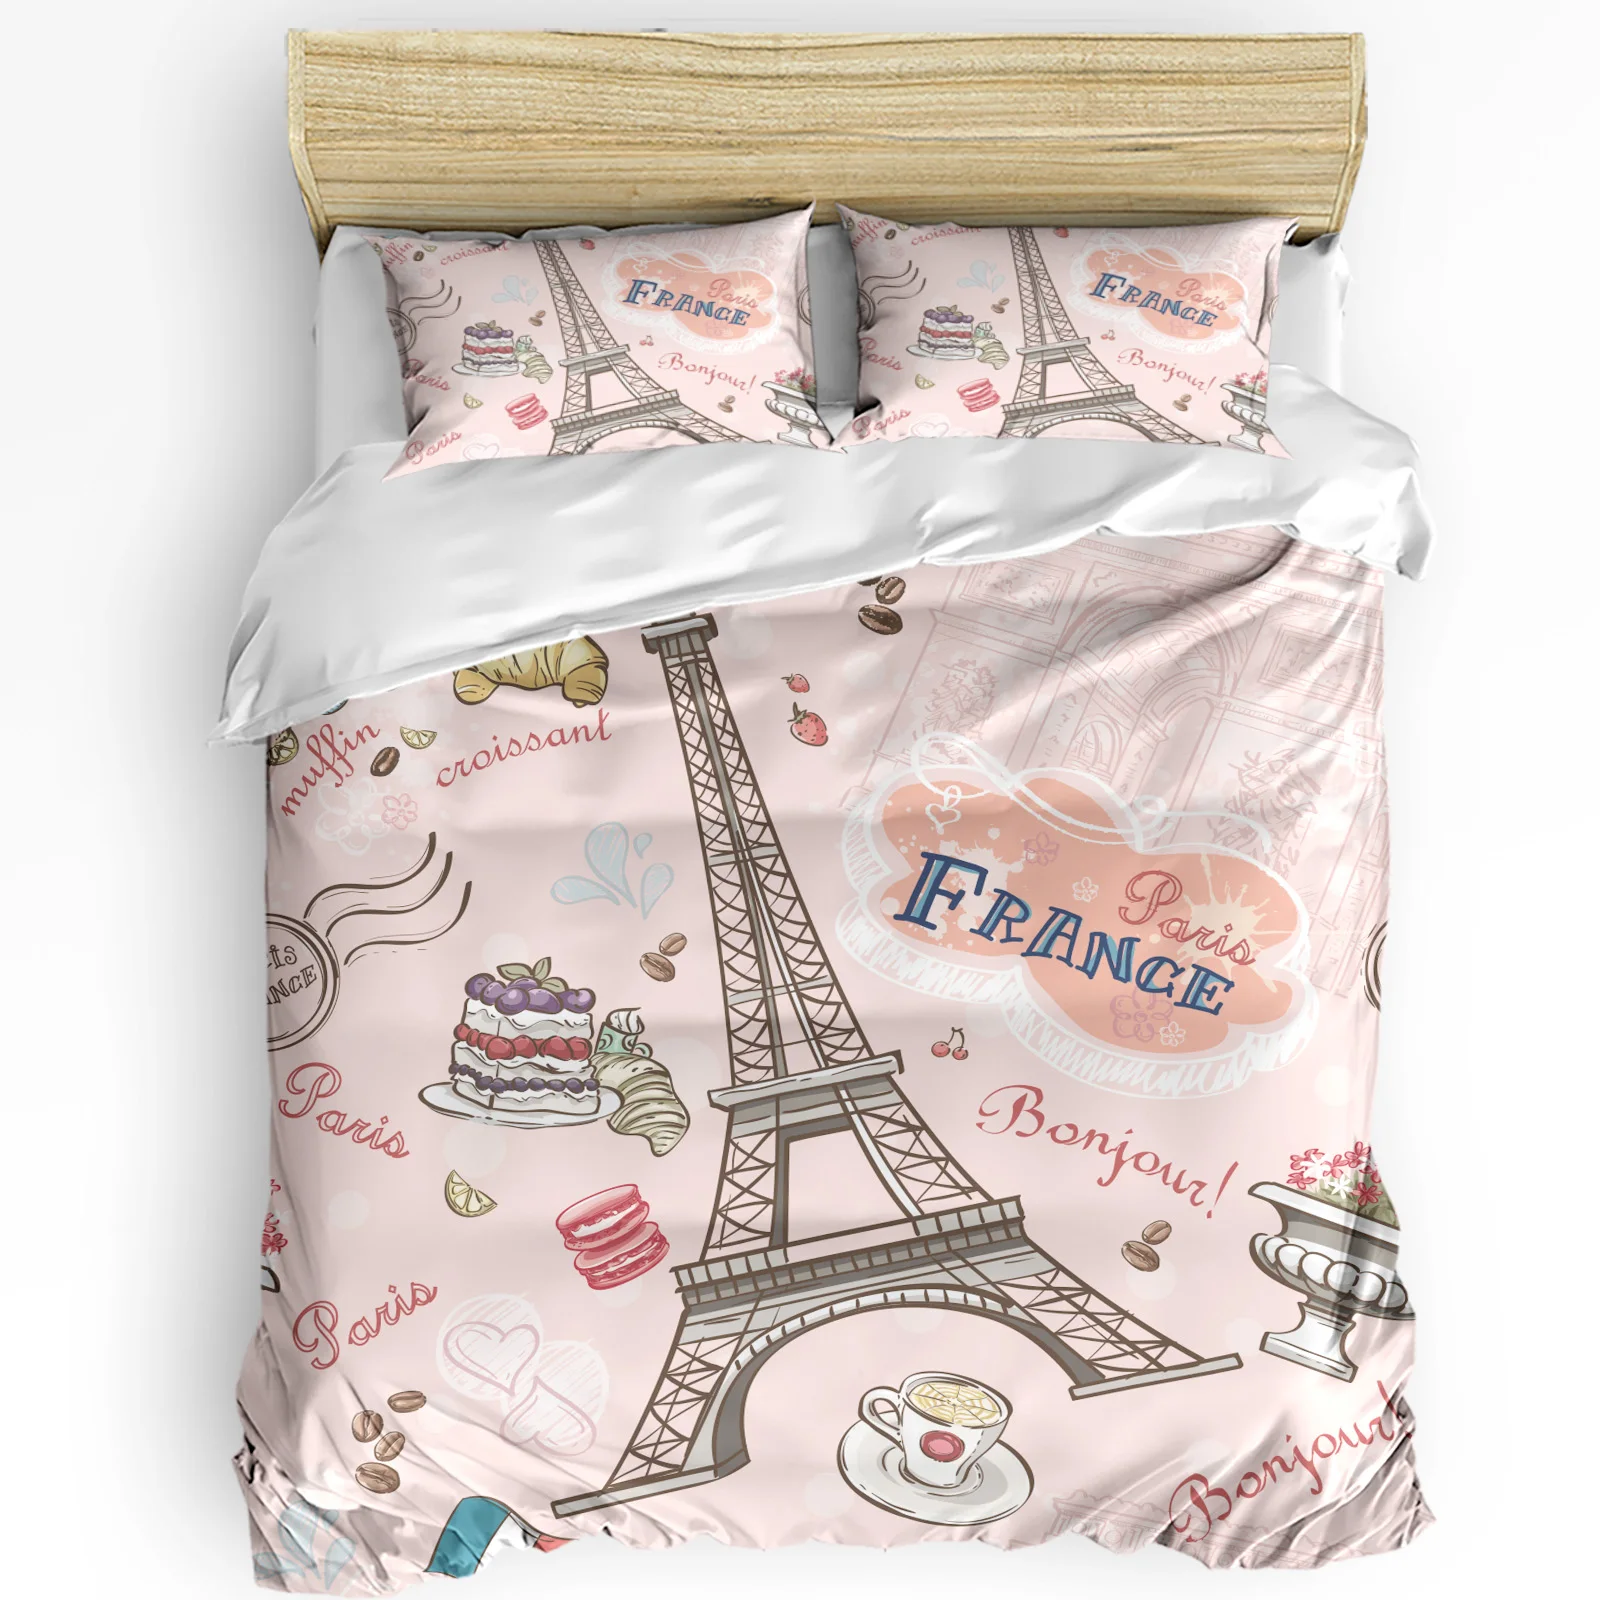 

France Paris Pink Retro Eiffel Tower Bedding Set 3pcs Duvet Cover Pillowcase Kids Adult Quilt Cover Double Bed Set Home Textile